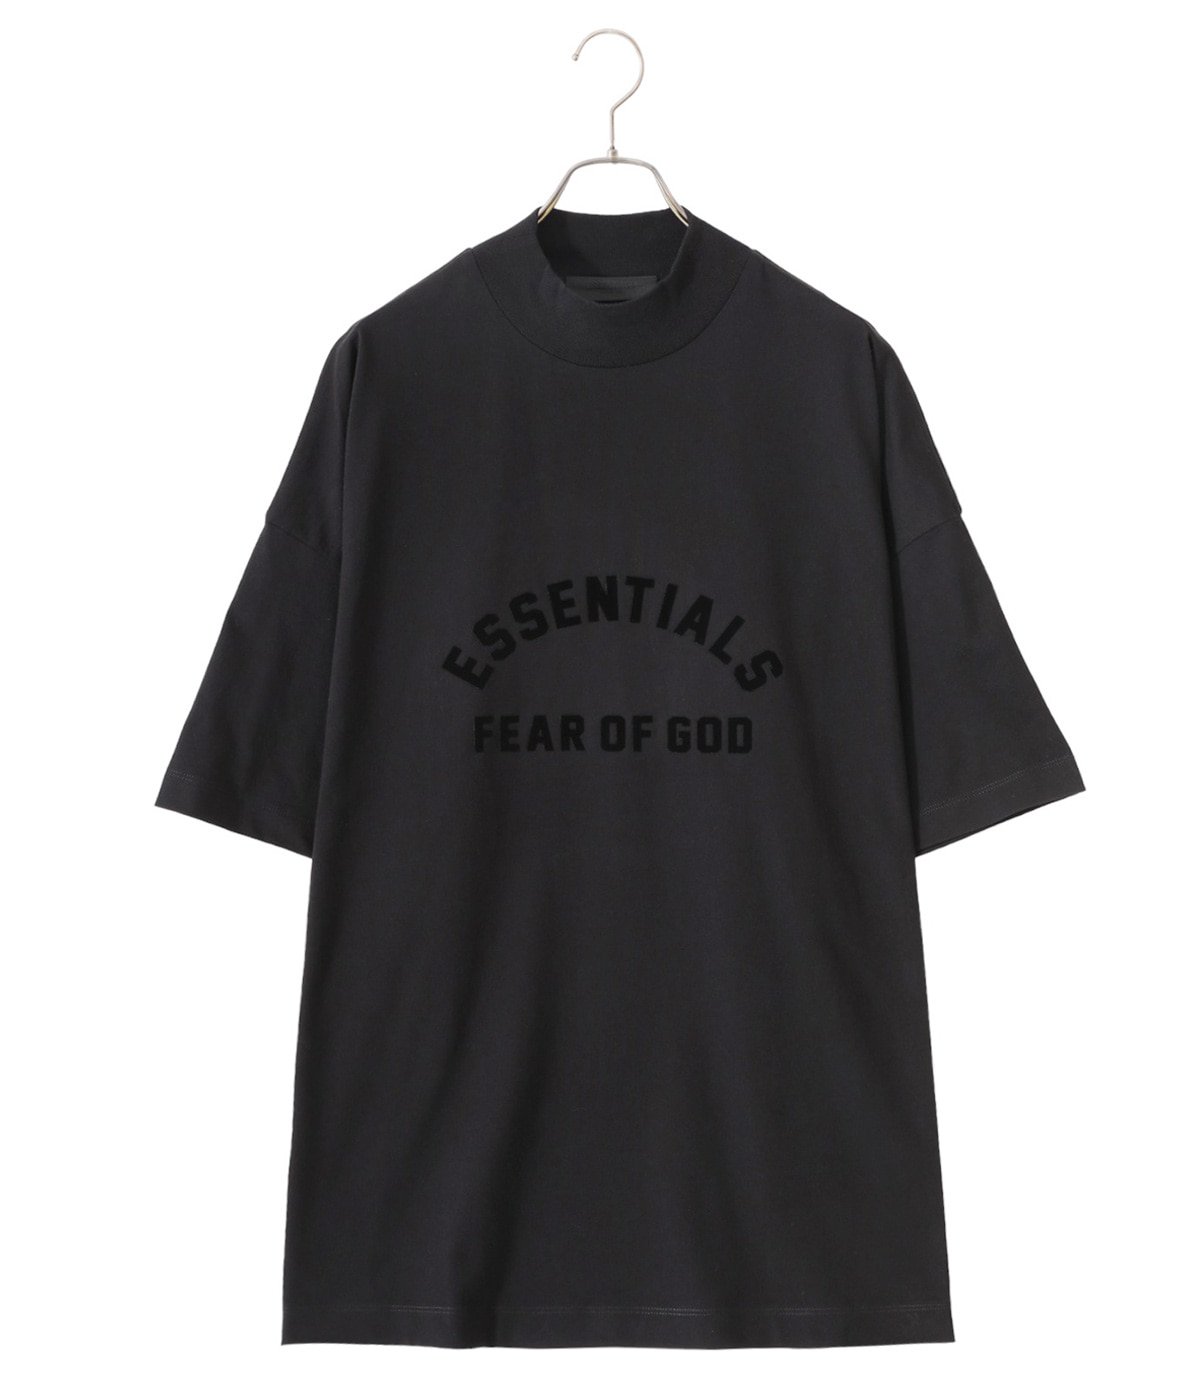 【Sサイズ】 ESSENTIALS FEAR OF GOD Tシャツ